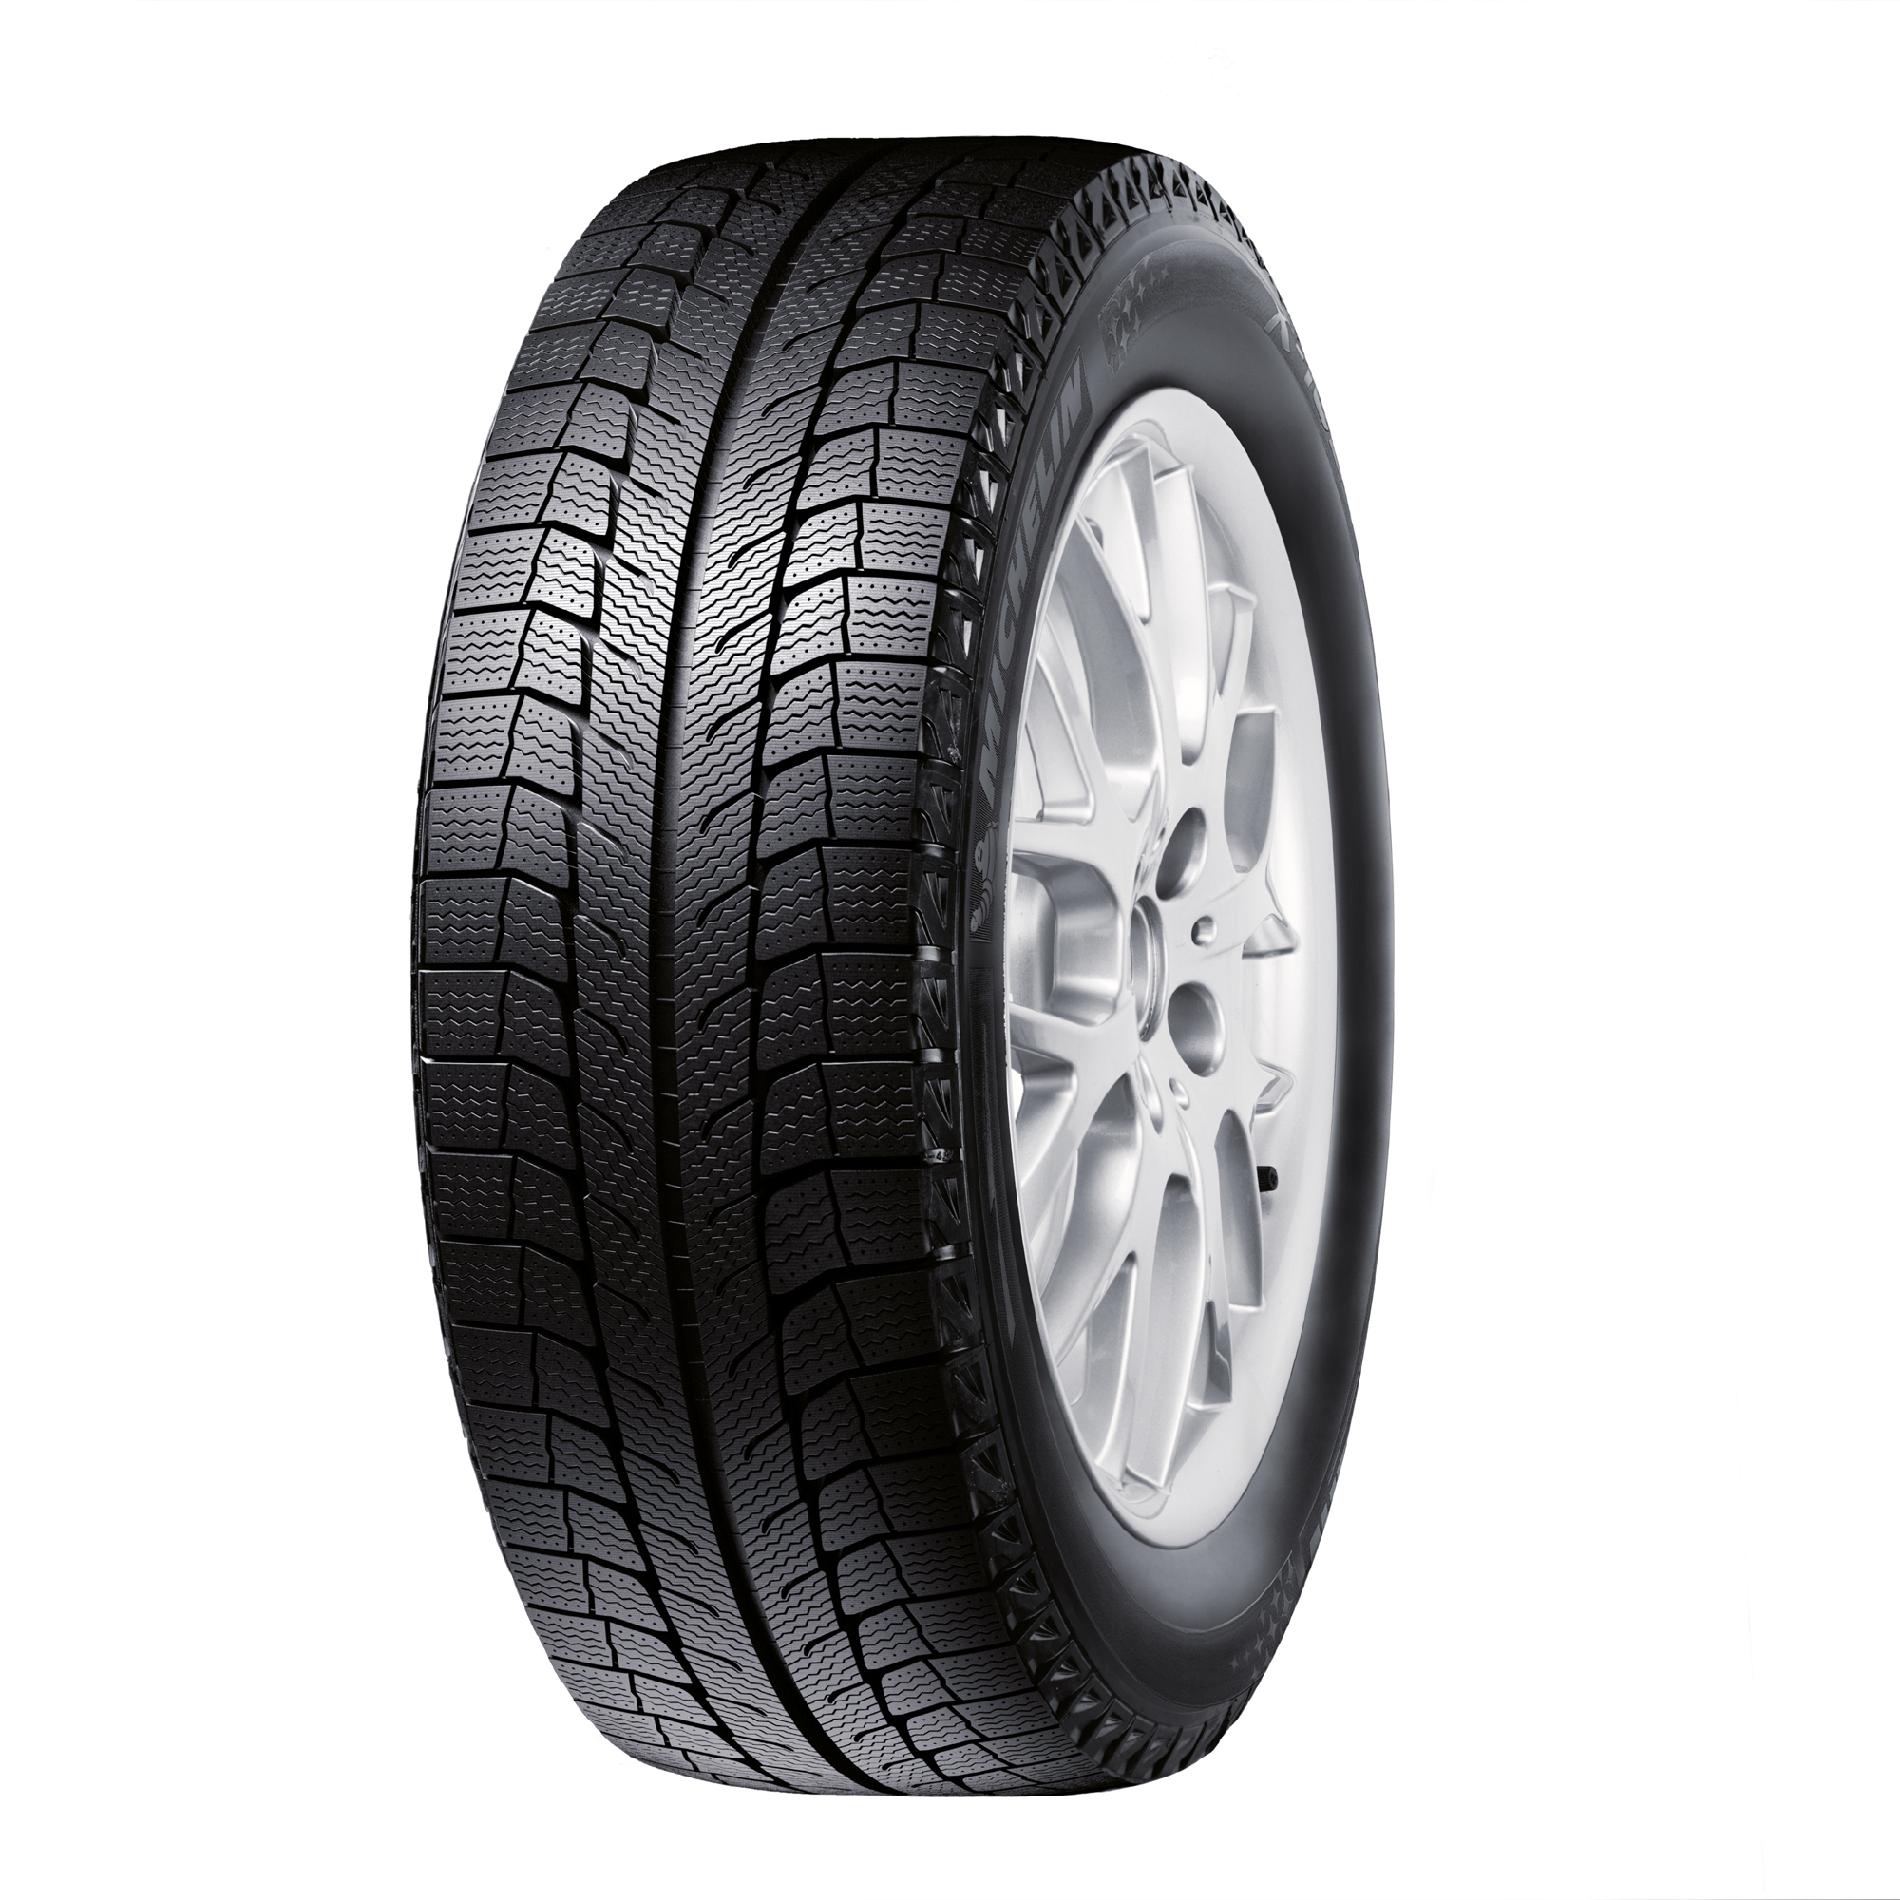 Michelin Latitude X Ice Xi2 275 55R20 Winter Tire